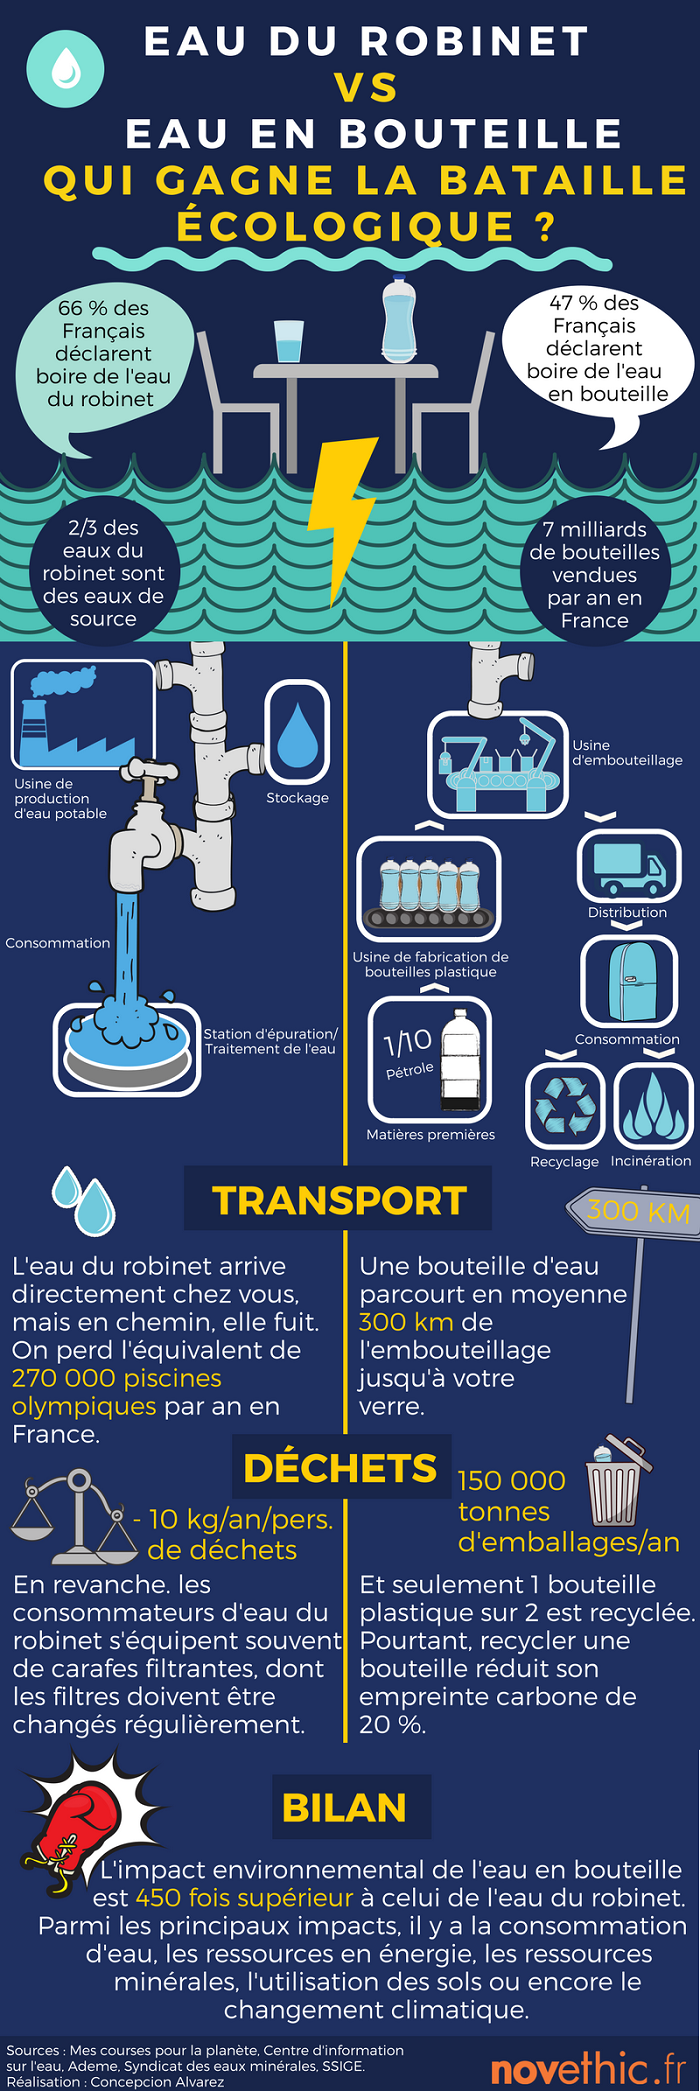 infog_eau_robinet_vs_eau_bouteille